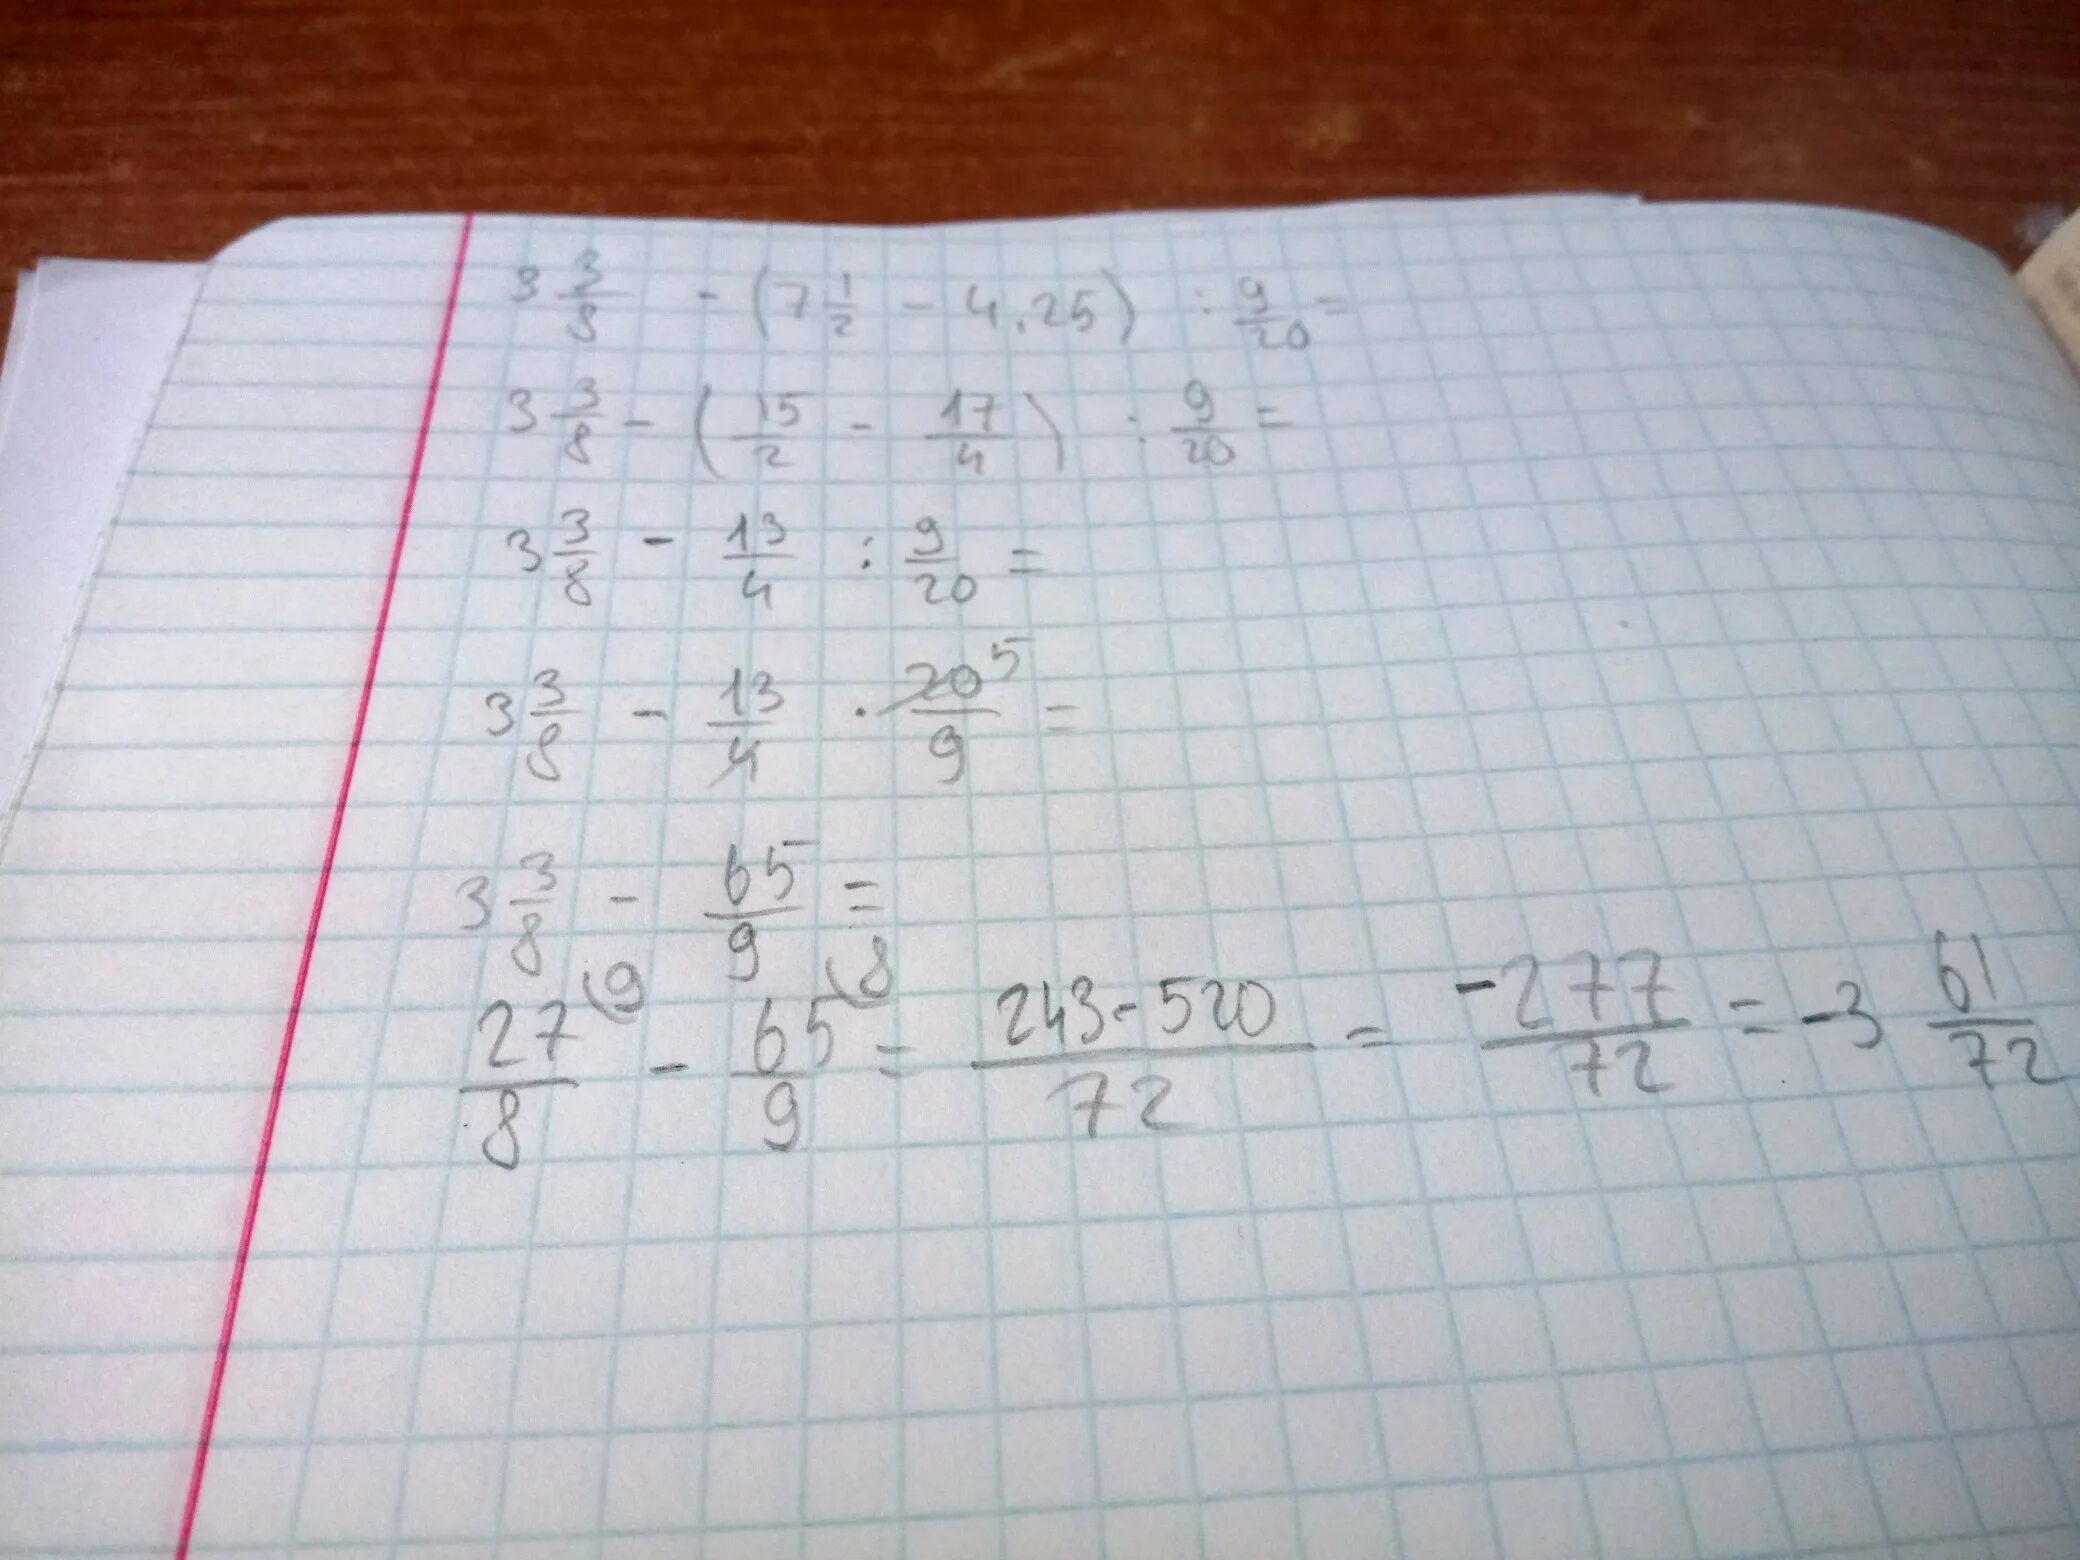 Б 9.8. А3-б3. Решить пример -3.8-(-5.3)-(-1.8)-(-4.7). Б)-3 1/3*(-2 3/4:5 1/2). Как решить такой пример 9.3=.